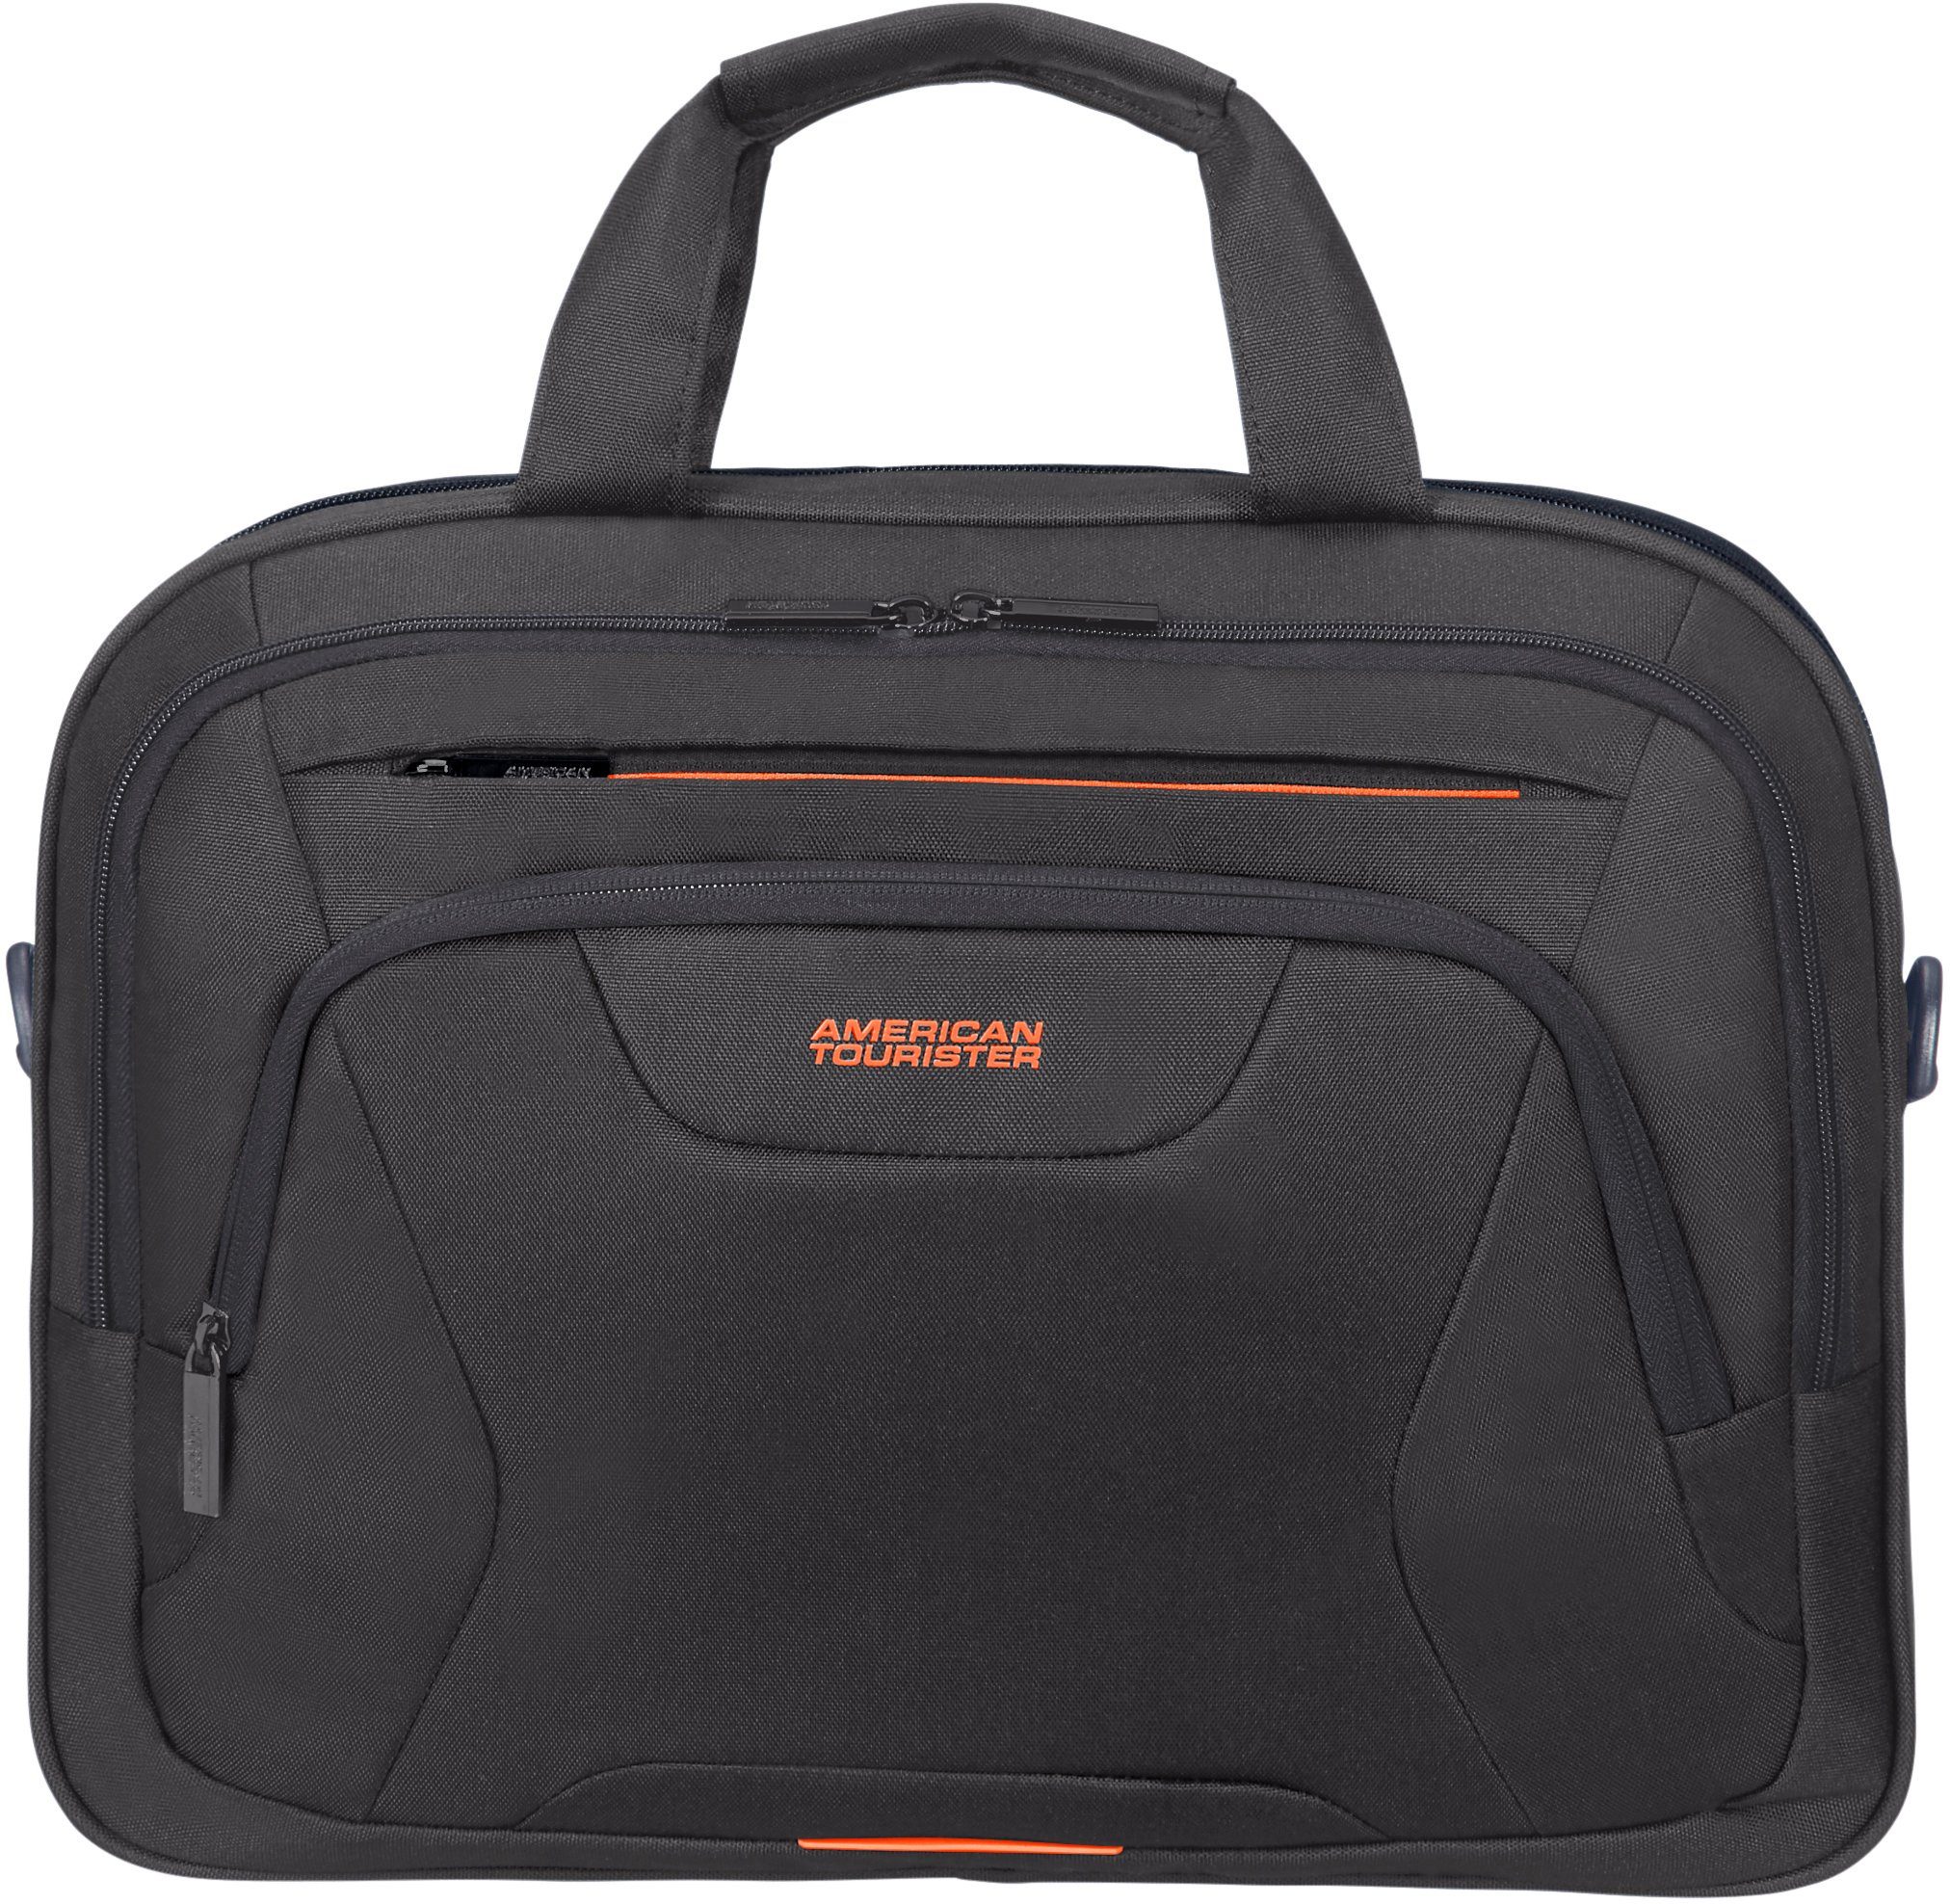 American Tourister® Laptoptasche At Work, mit 15,6-Zoll Laptopfach und 10,5-Zoll Tabletfach black/orange